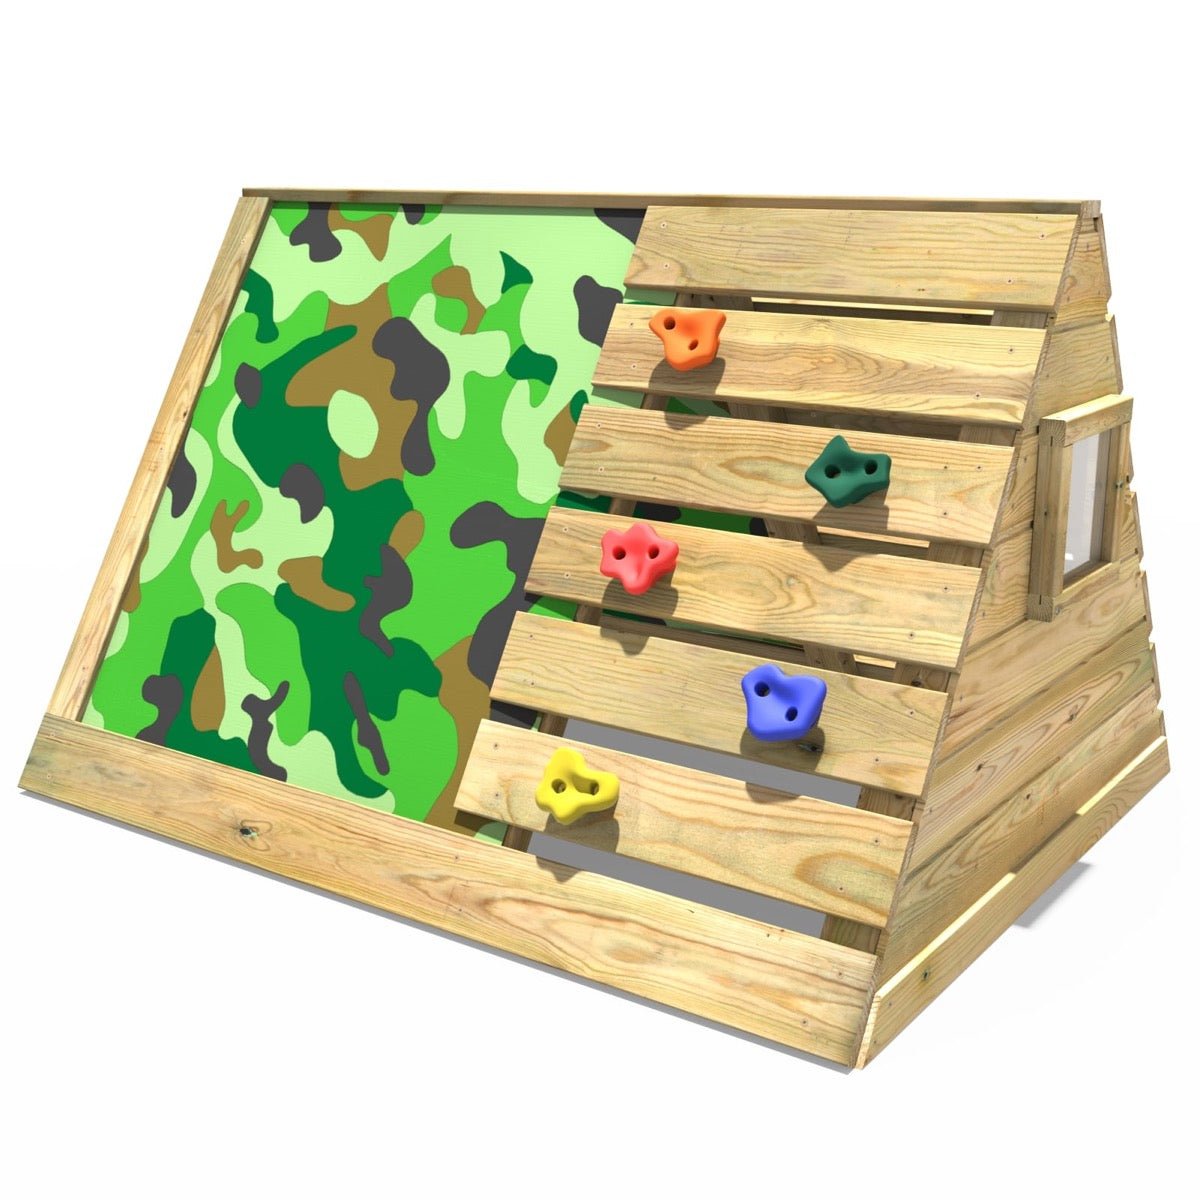 Rebo Mini Wooden Climbing Pyramid Adventure Playset + Den - Camo